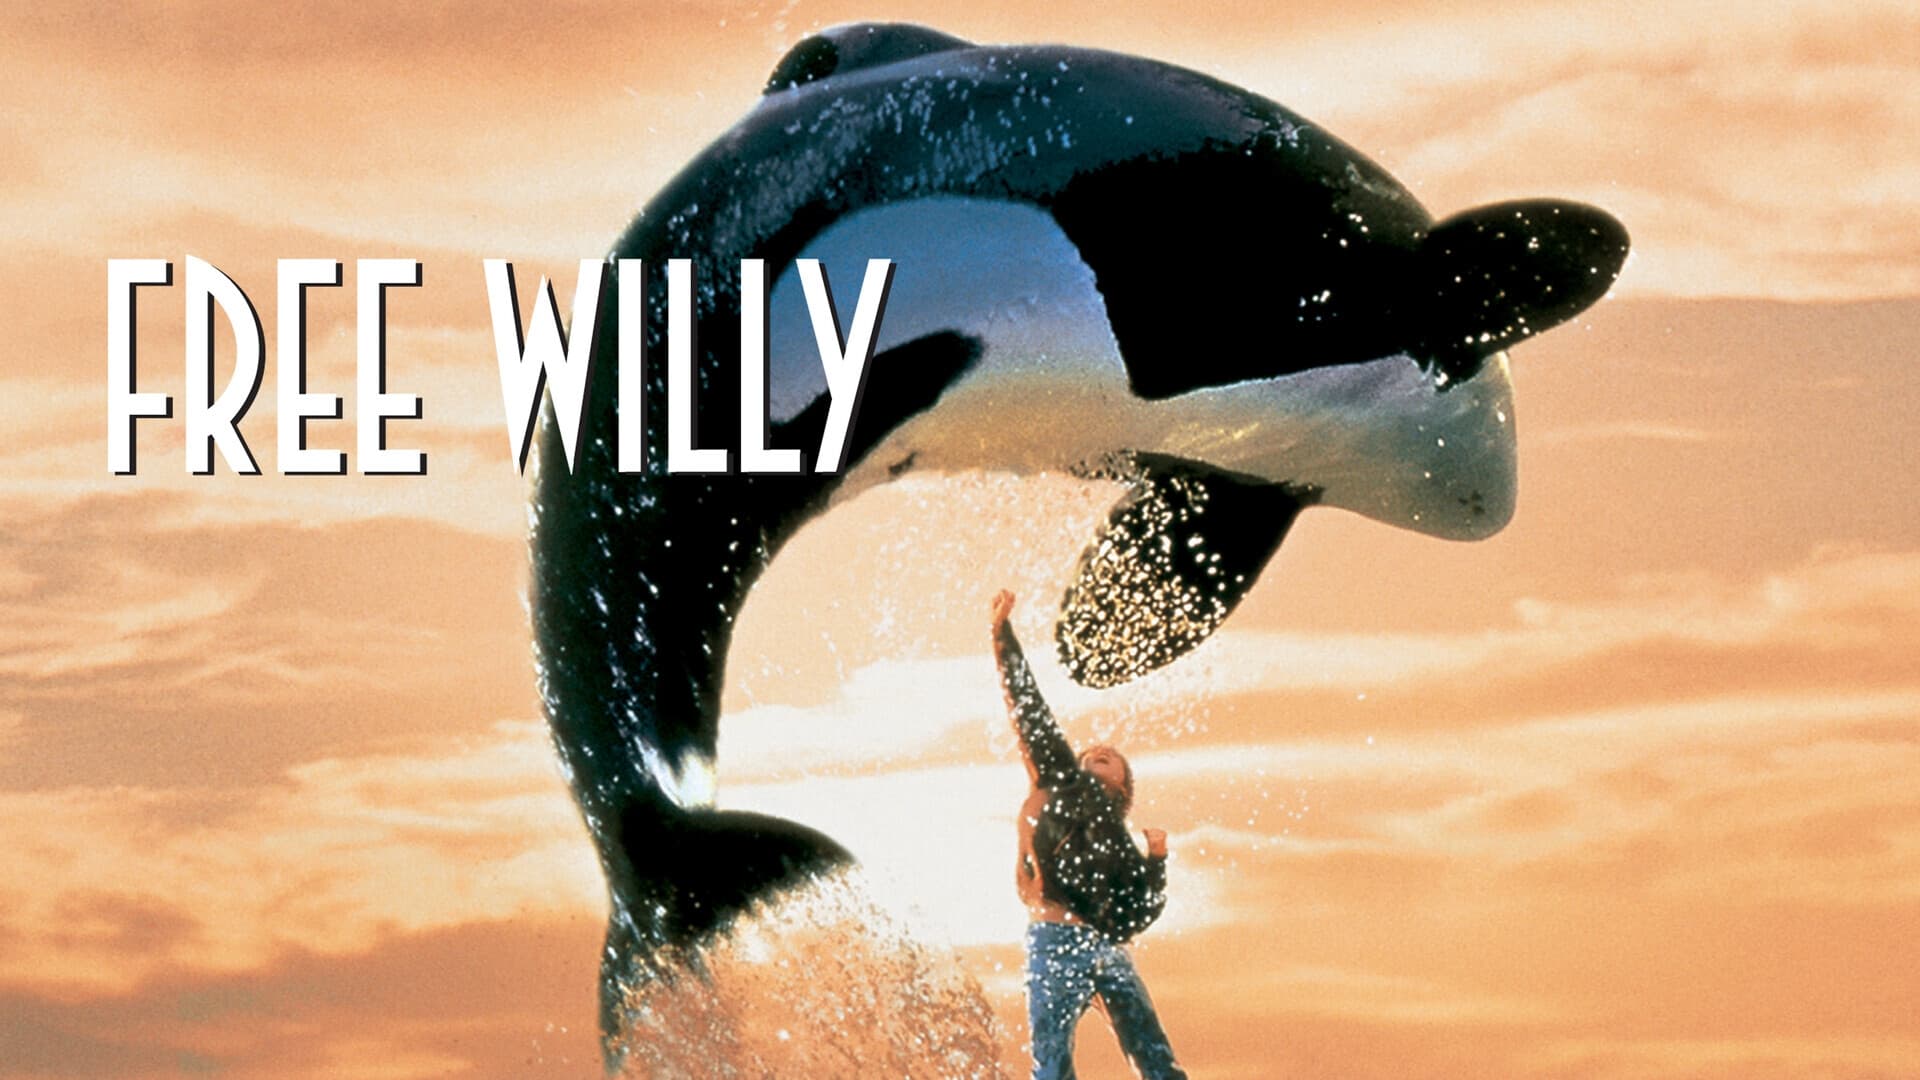 Sauvez Willy